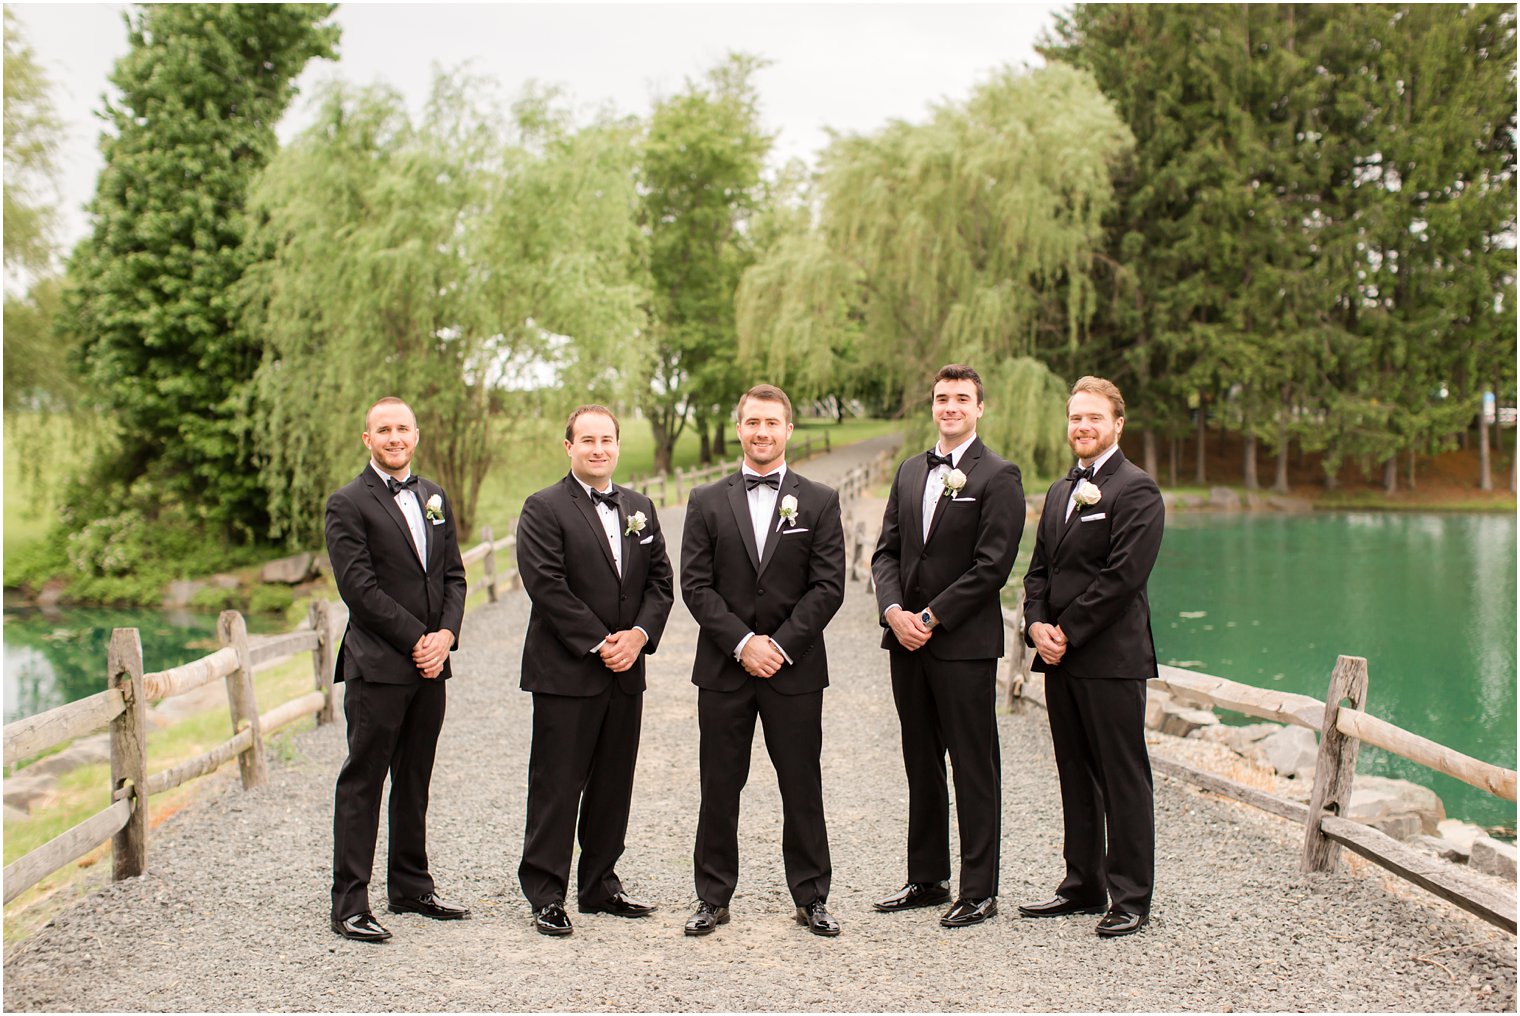 Groomsmen in Vera Wang BLACK tuxedos | Photos by Idalia Photography